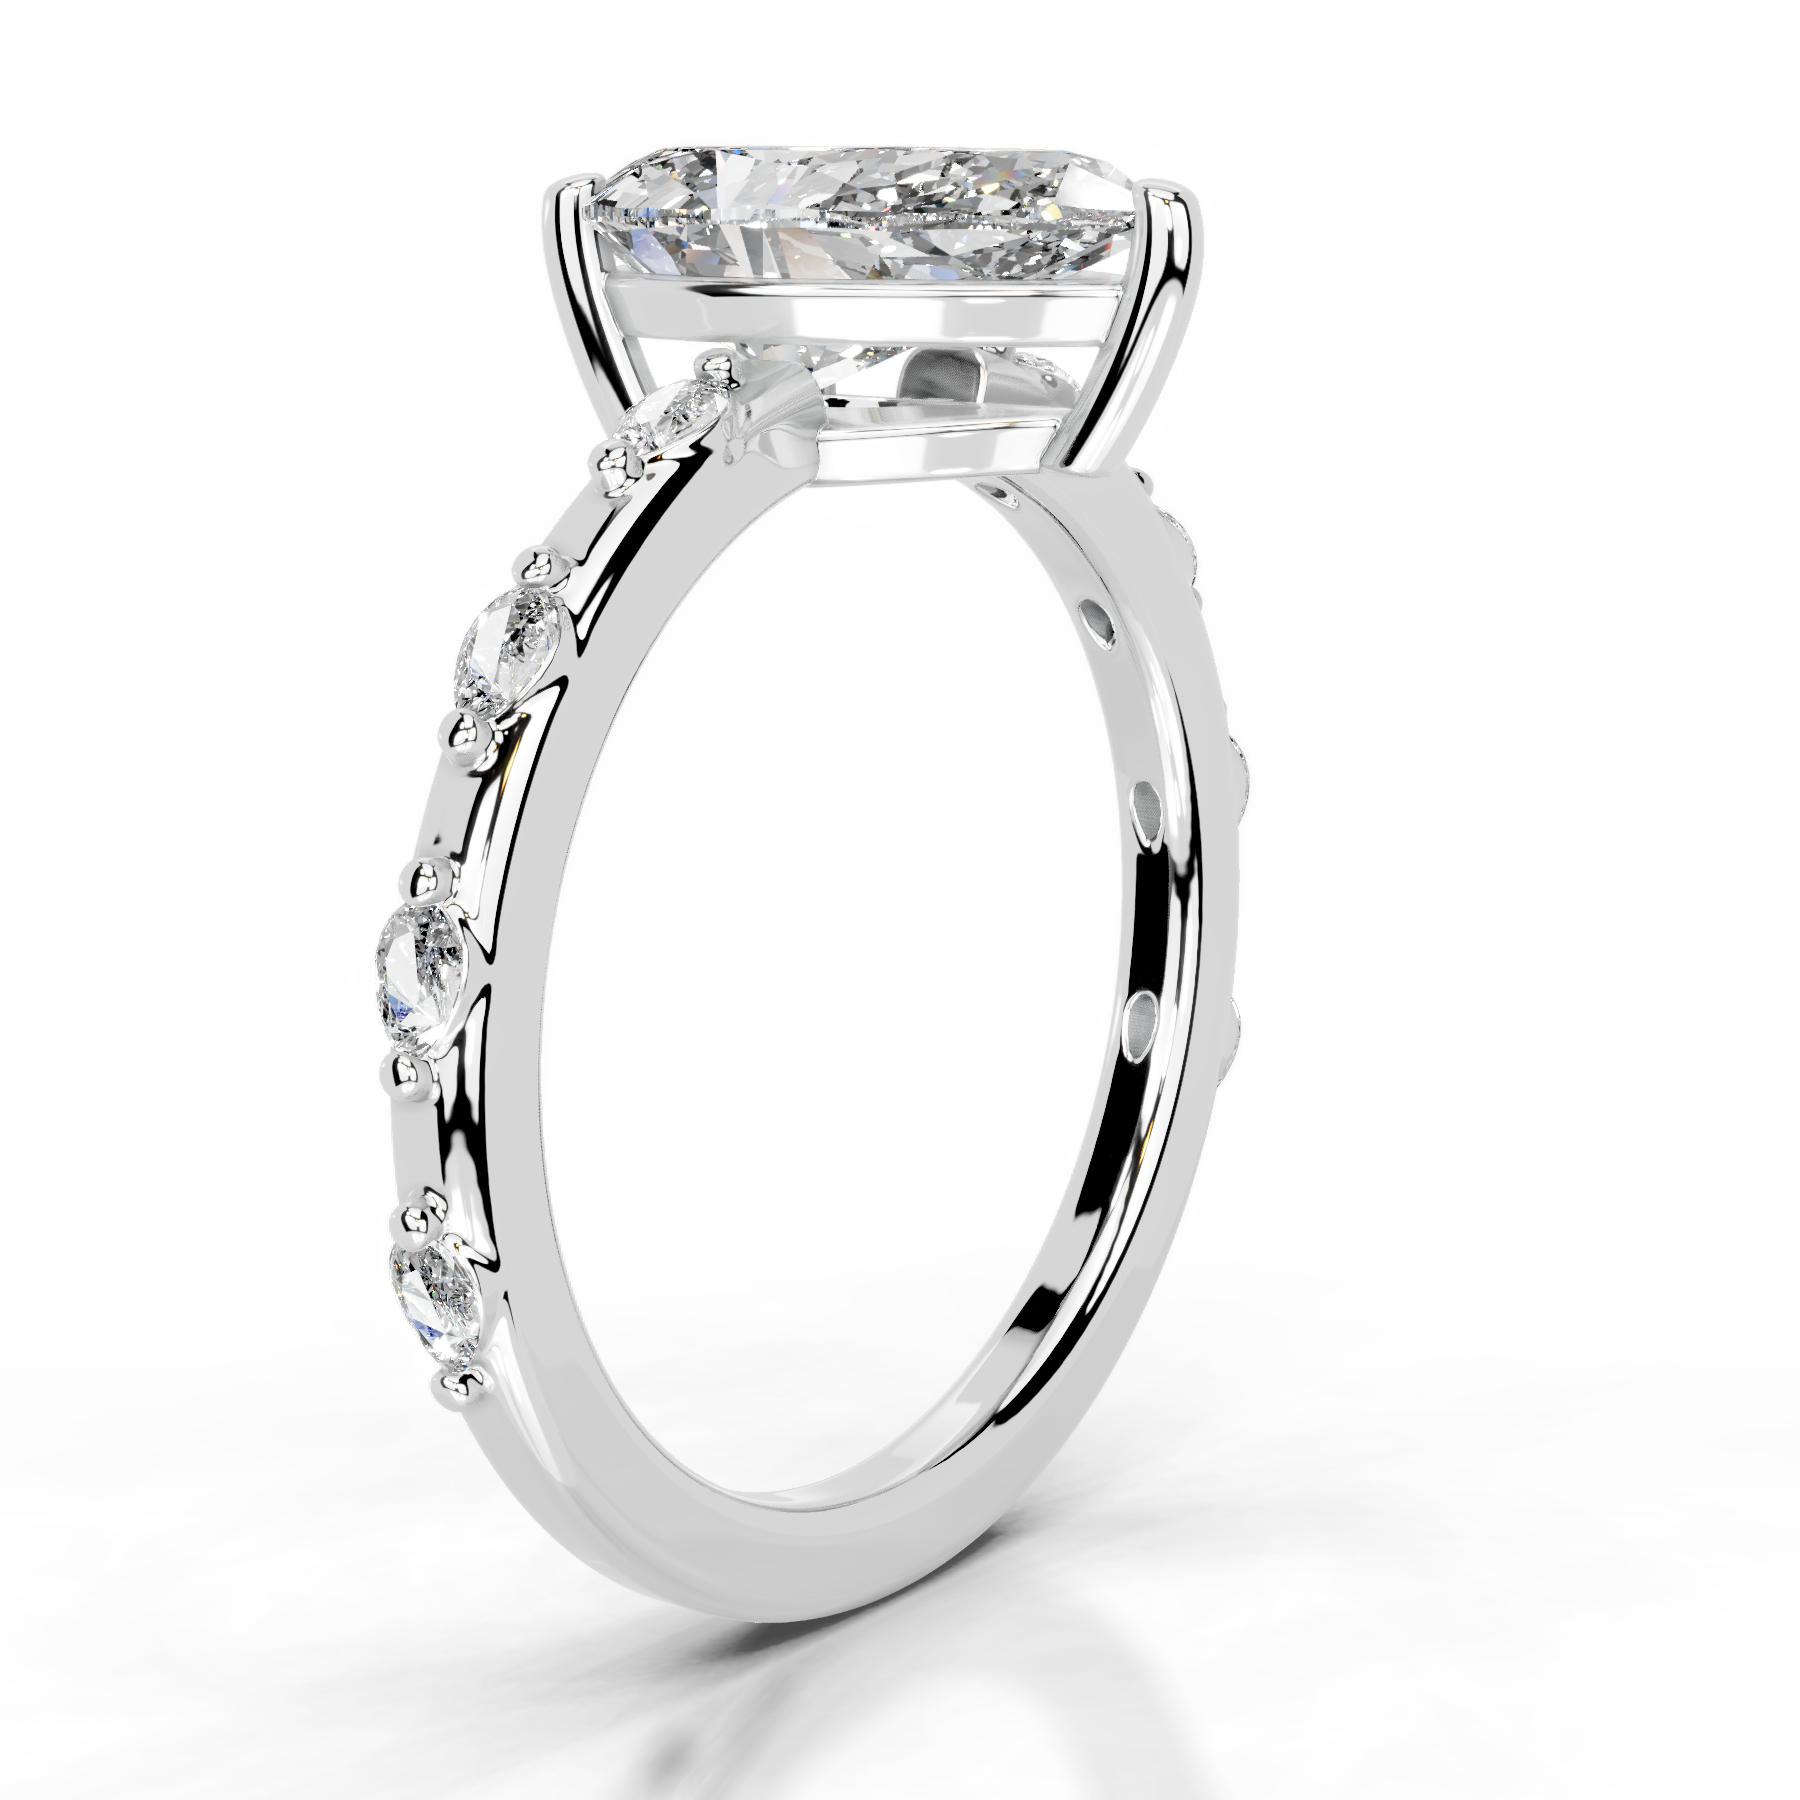 Nadya Diamond Engagement Ring   (2.2 Carat) -14K White Gold